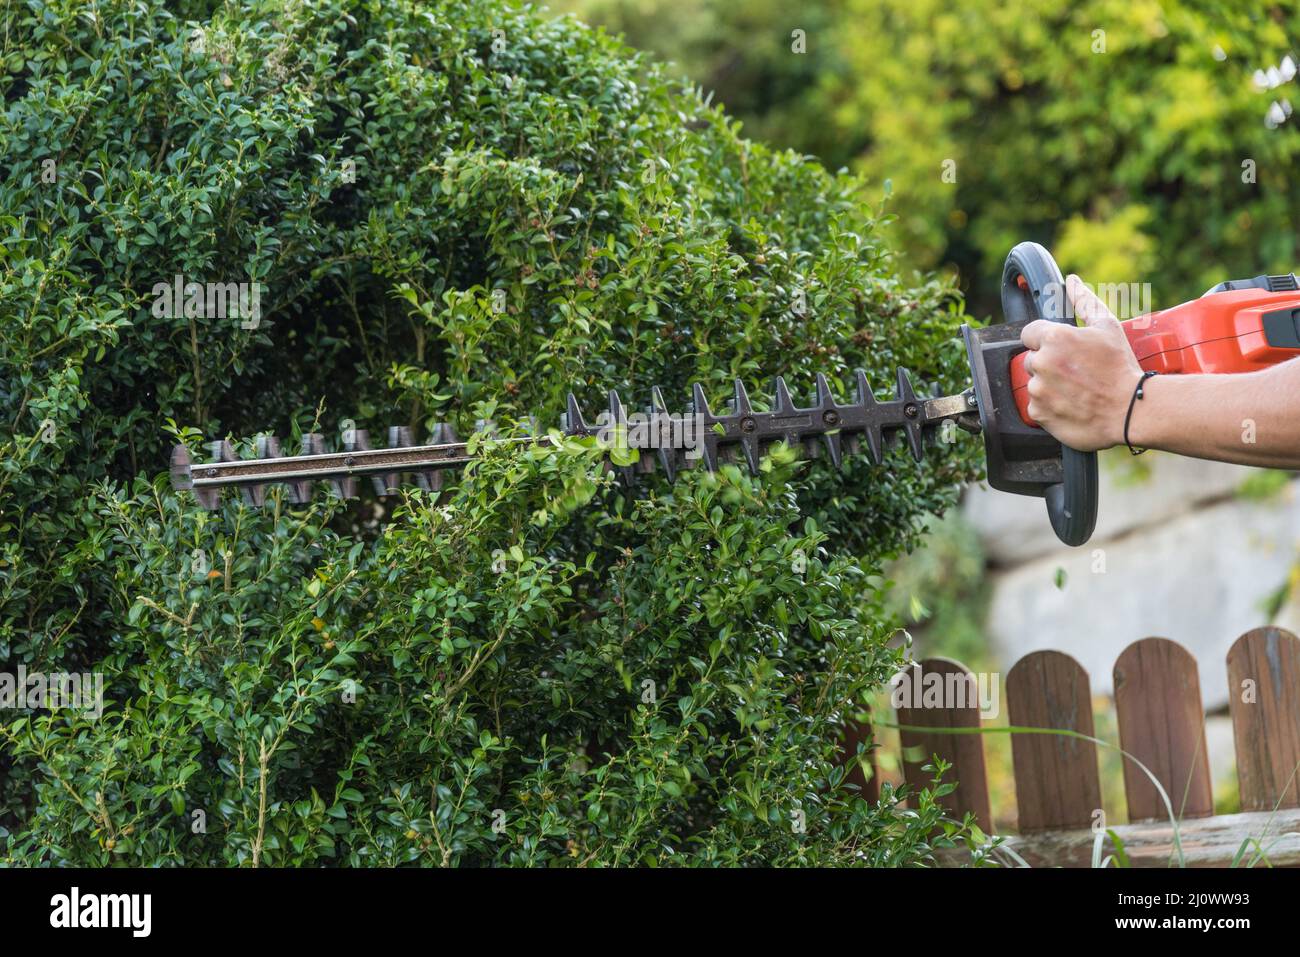 Jardinero con cortapatillas eléctrico corta madera de boxeo - diseño de jardín Foto de stock